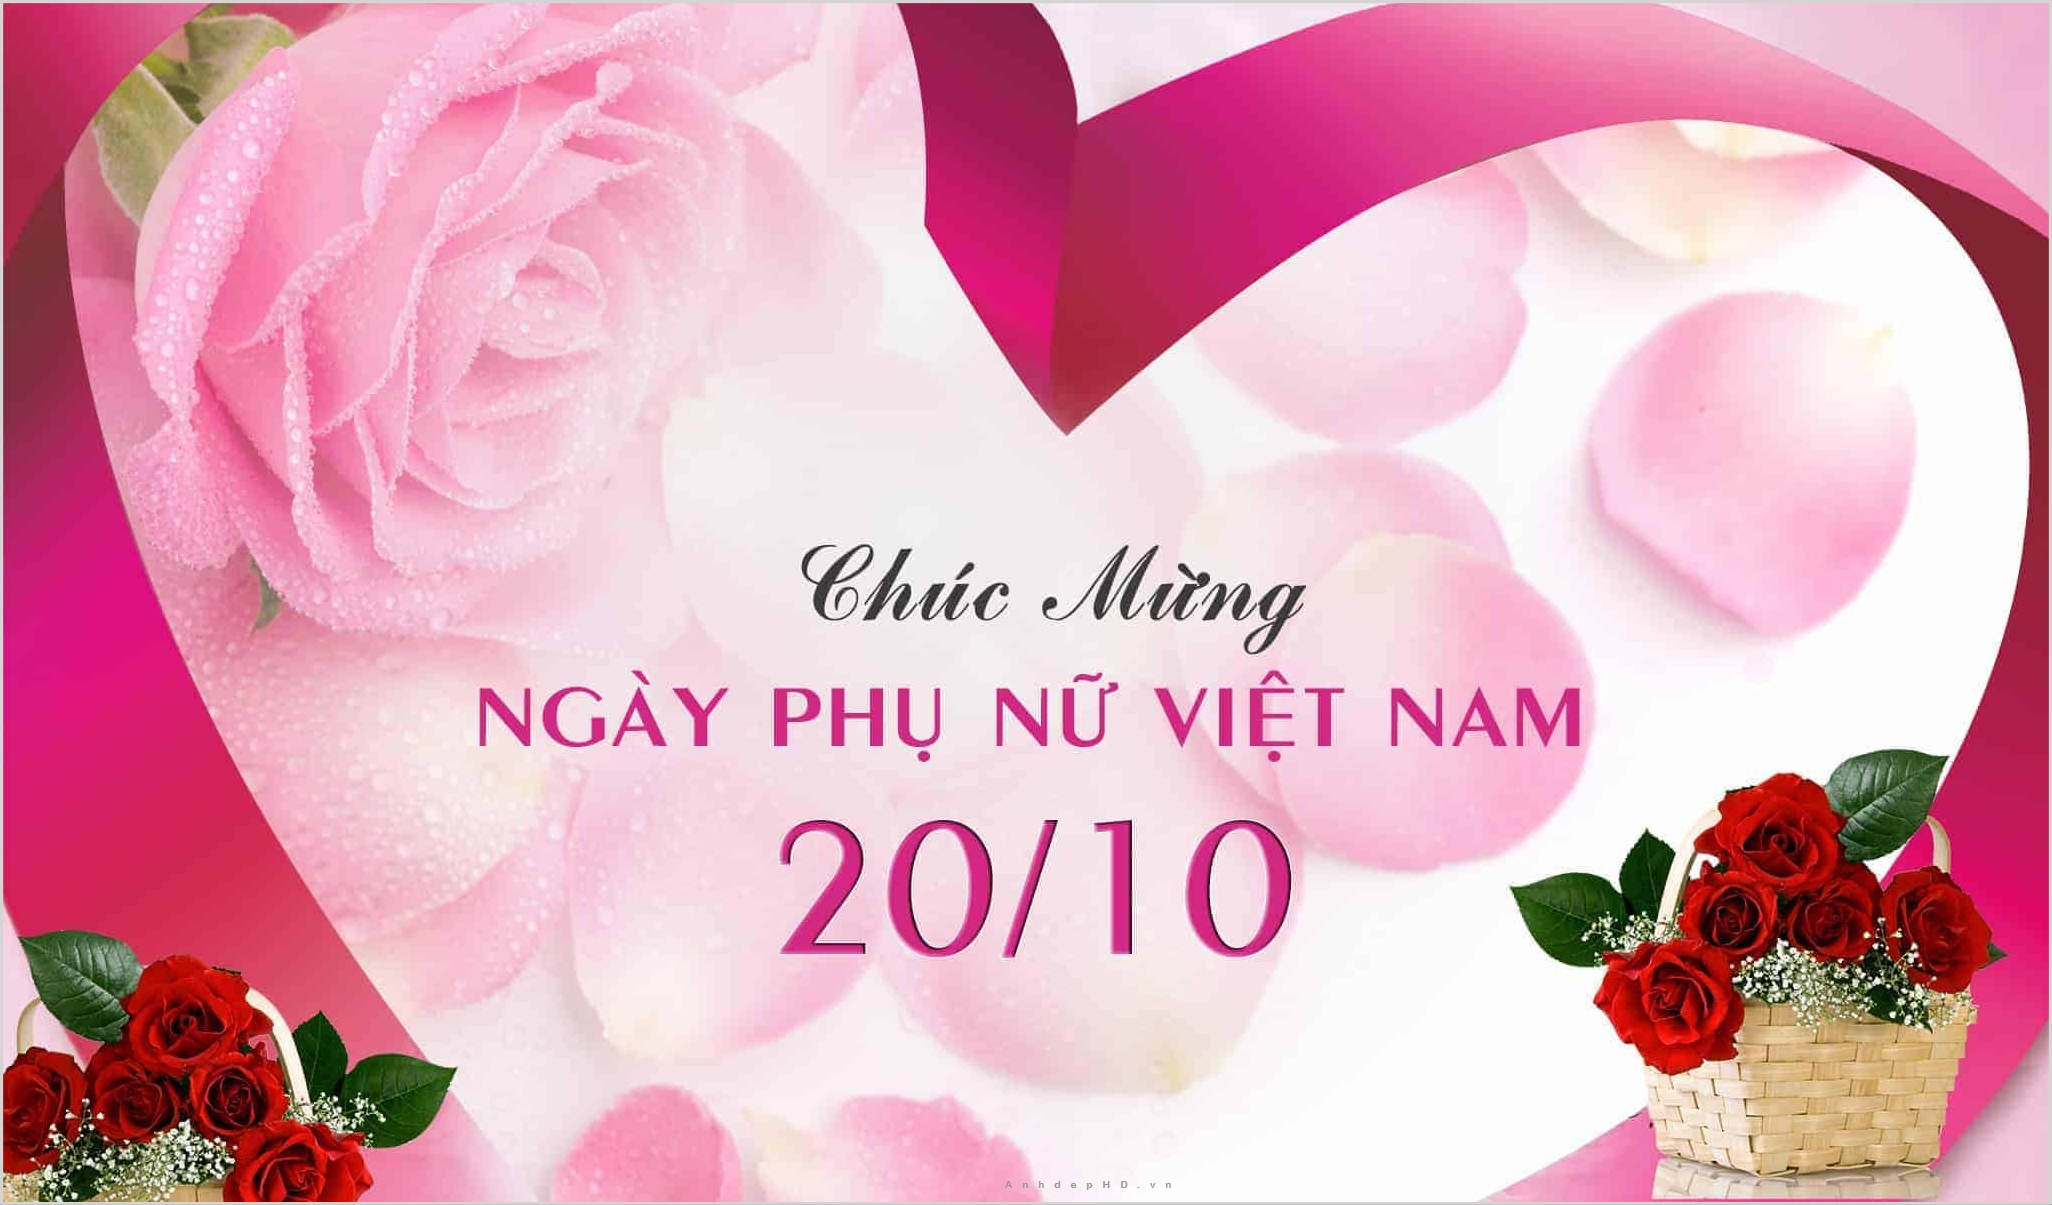 Chúc mừng phụ nữ Việt Nam: Hãy đón xem hình ảnh đầy tính đồng cảm và ca ngợi những đóng góp quan trọng của phụ nữ Việt Nam trong xã hội. Chúc mừng ngày phụ nữ Việt Nam - một dịp để tôn vinh và gửi lời cảm ơn đến những người phụ nữ tuyệt vời.